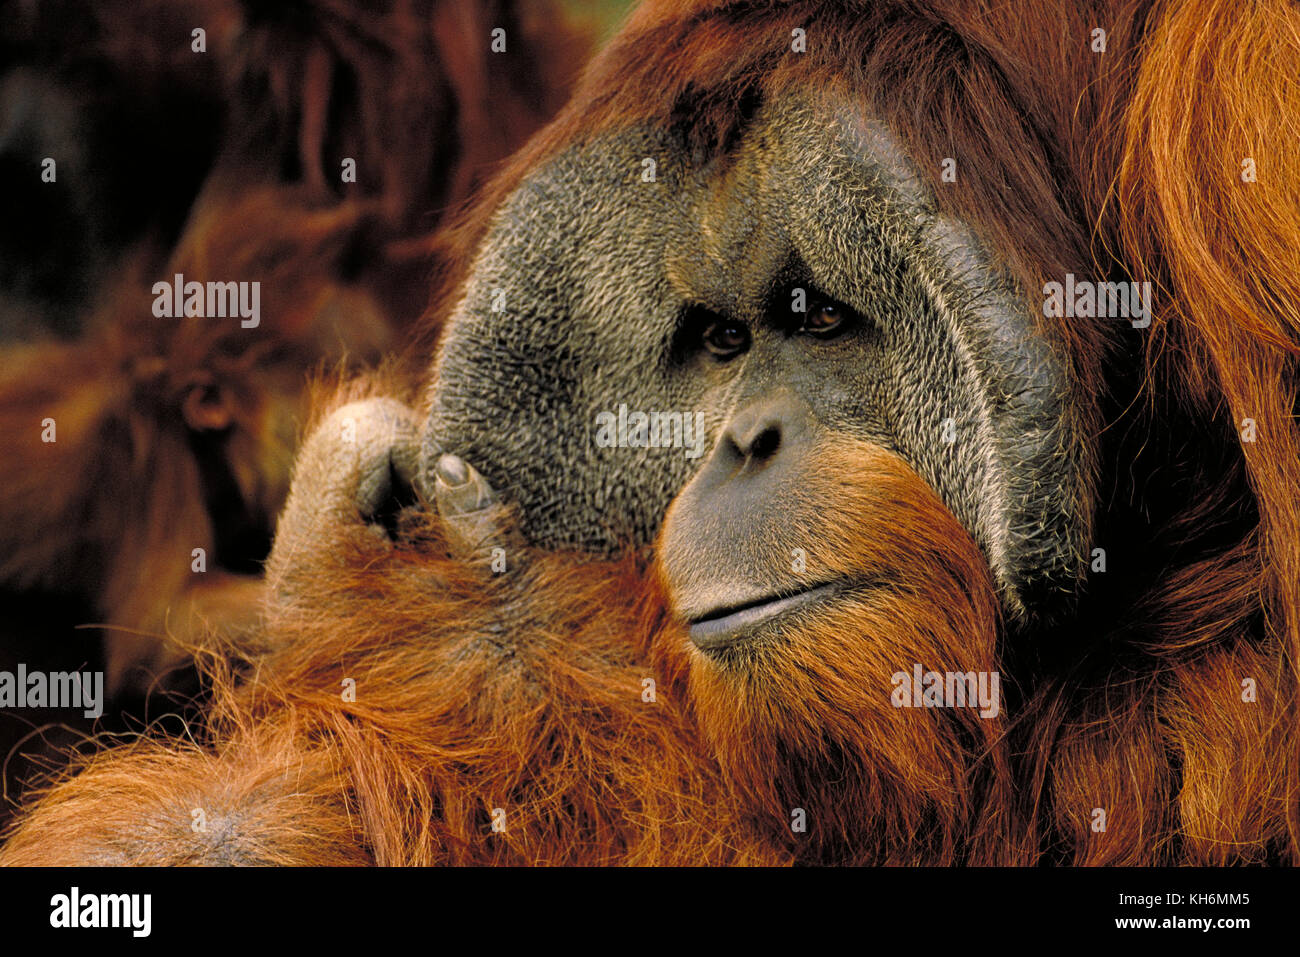 Orangután de Sumatra, pongo abelii, macho. Las especies críticamente amenazadas Foto de stock